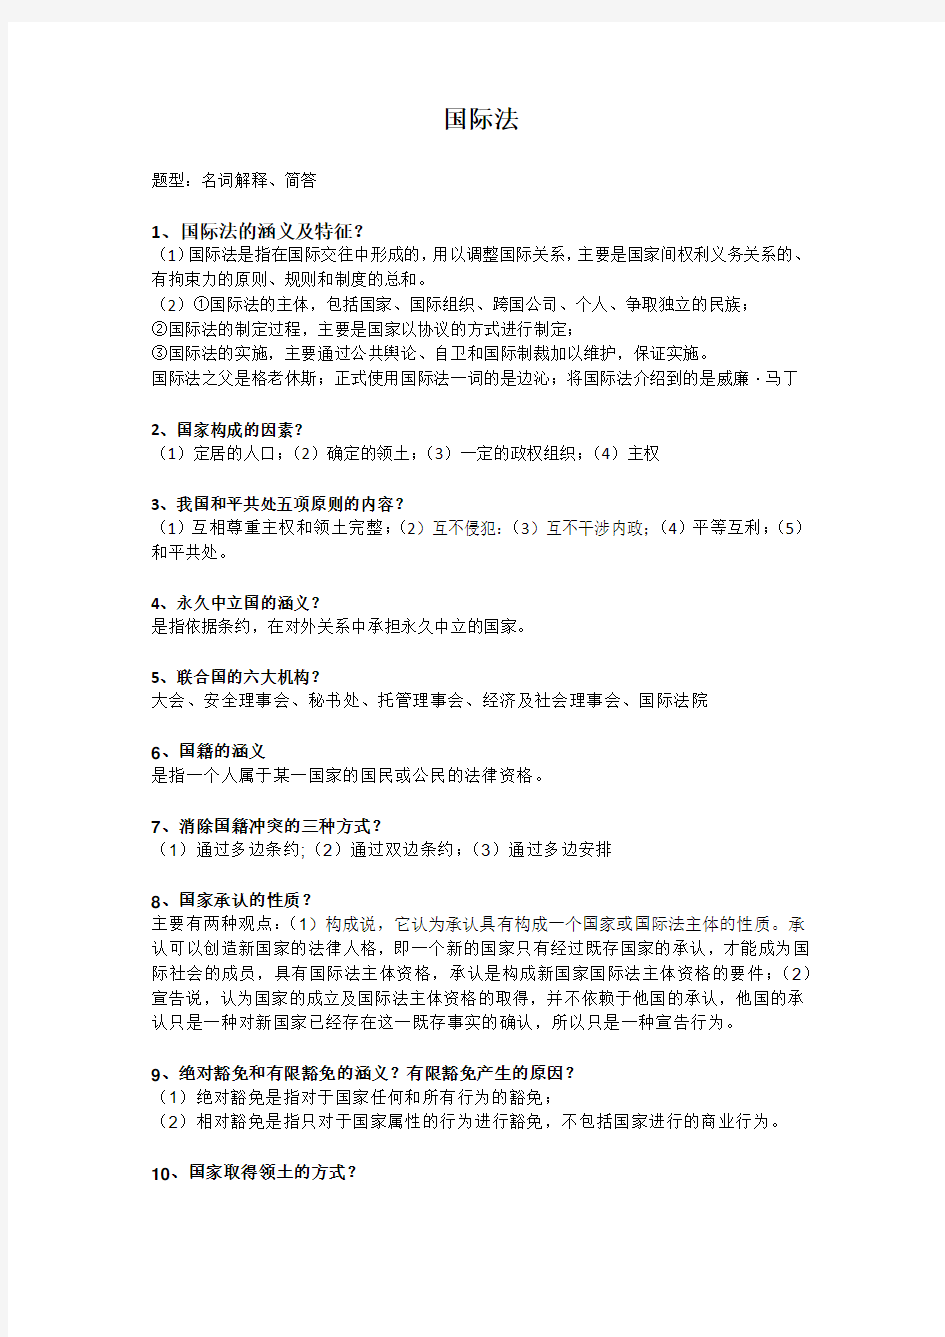 上海海事大学期末考试国际法学霸版